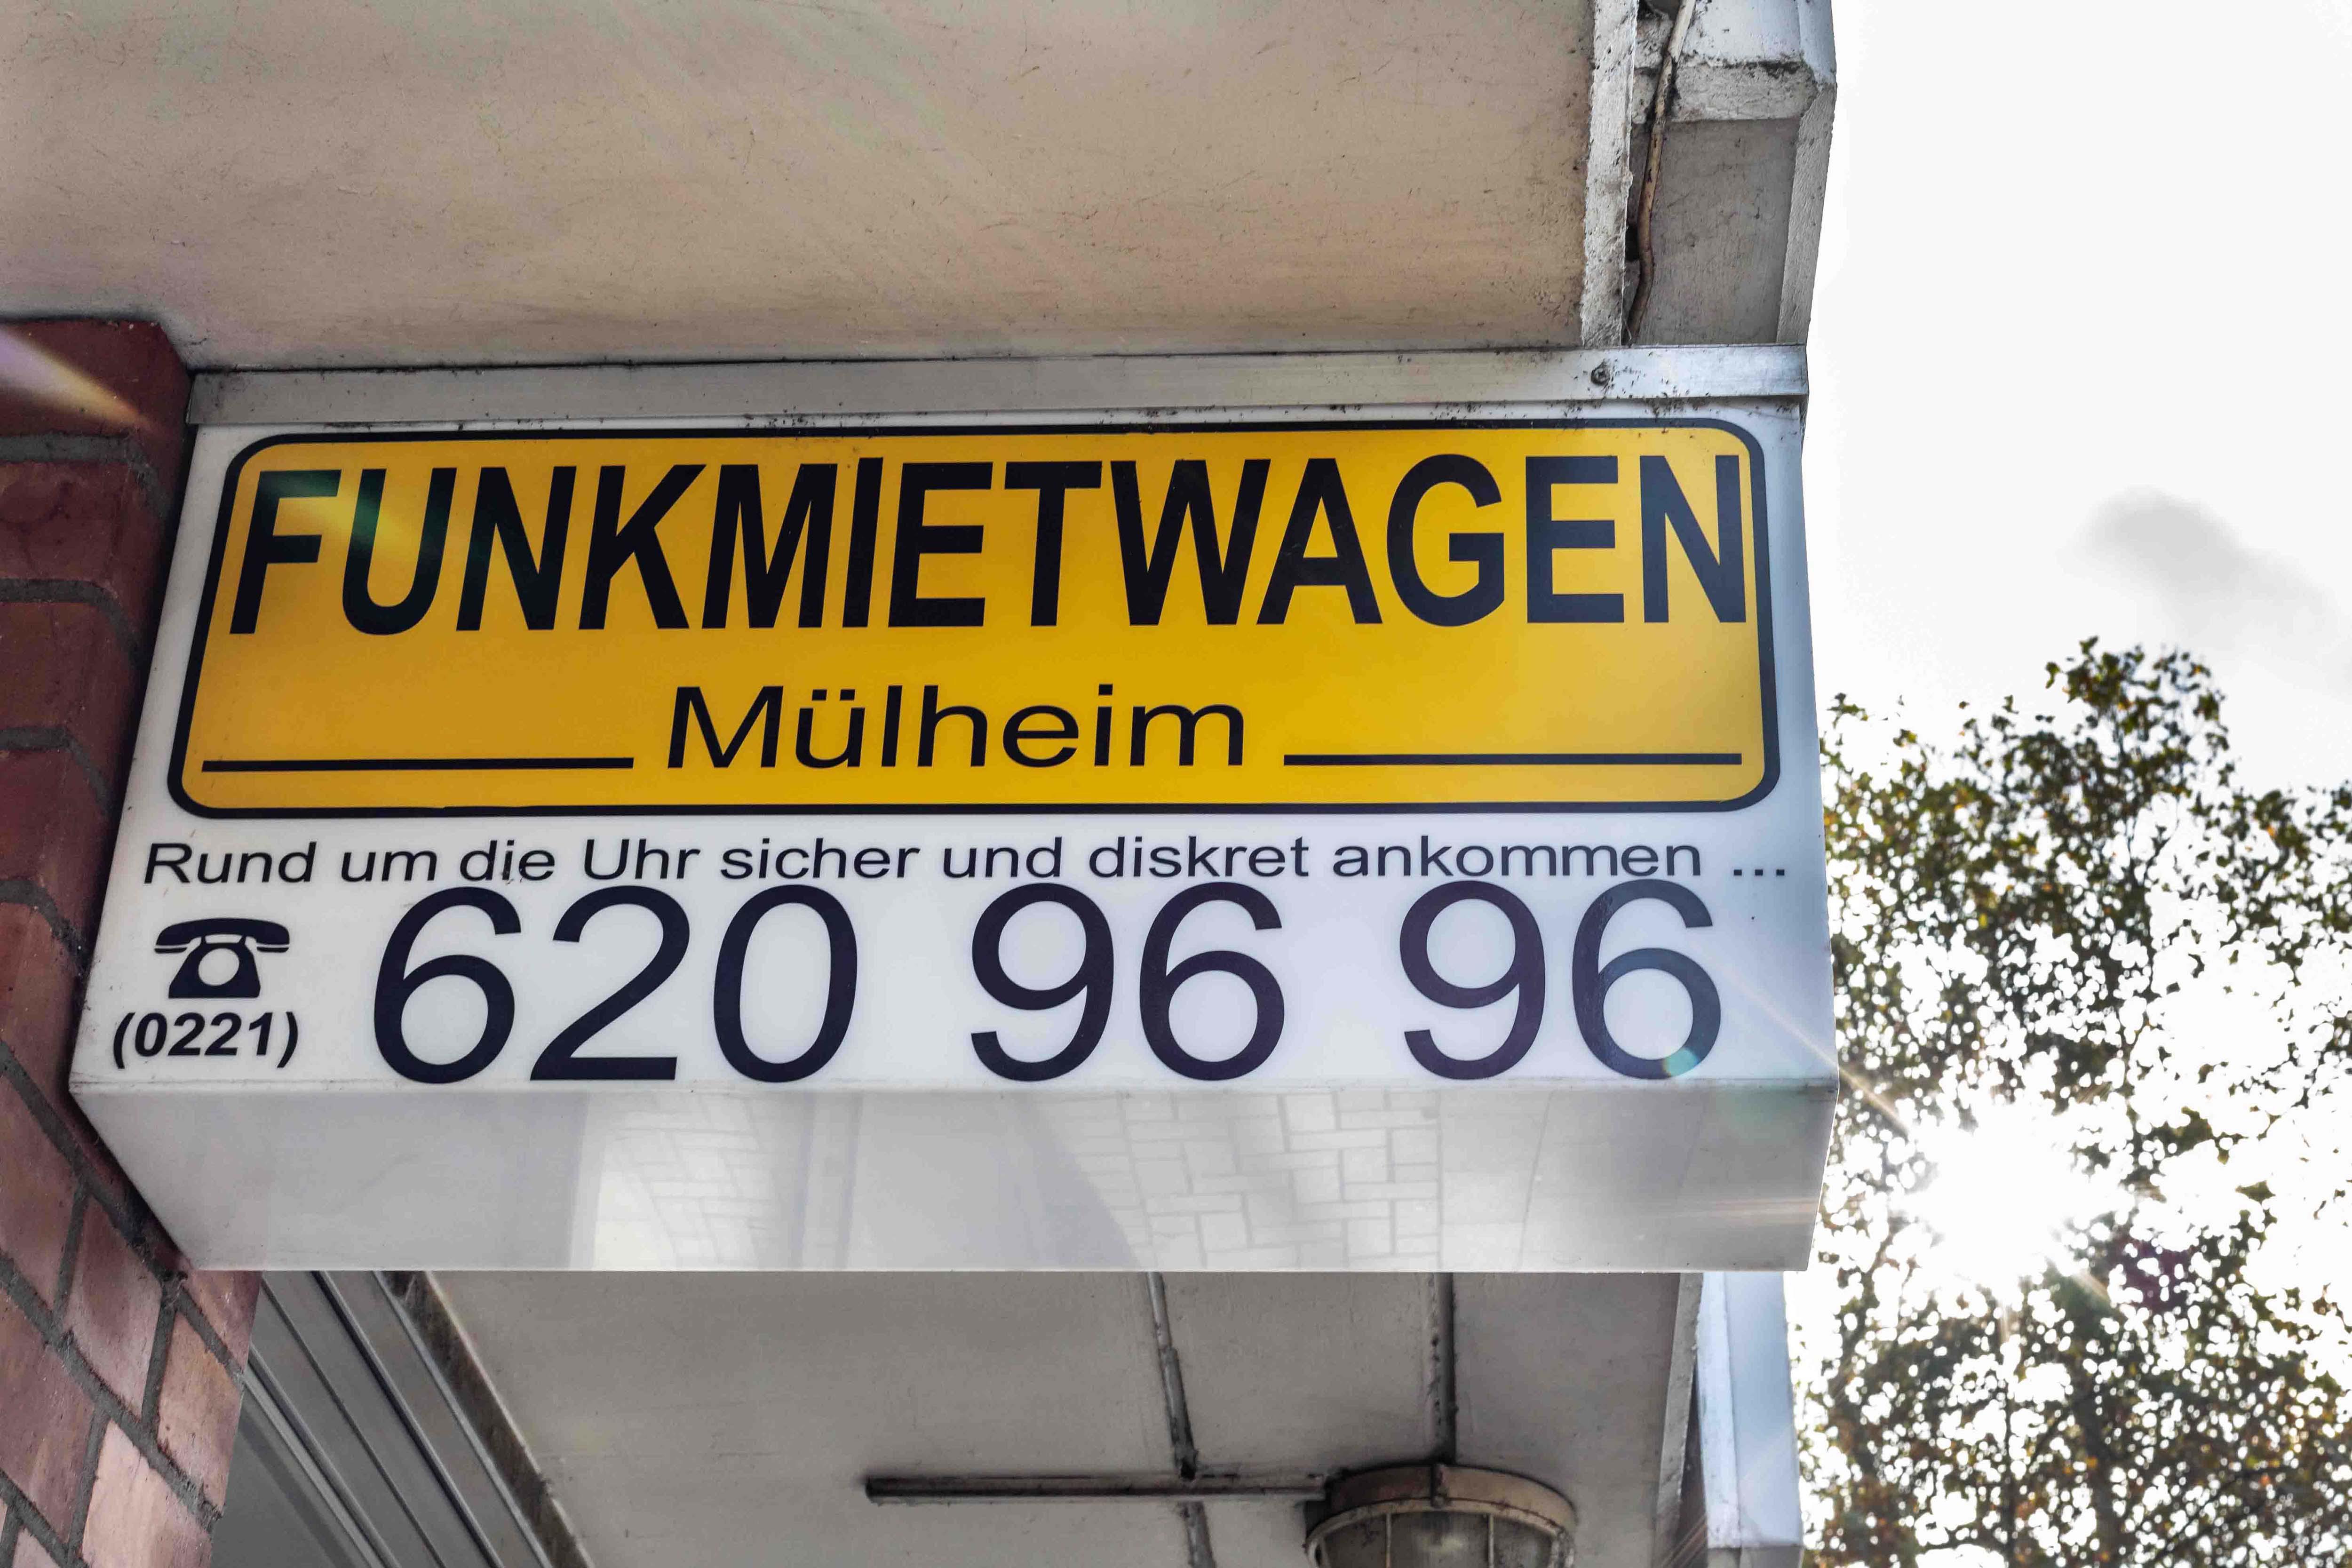 Funktaxi Mülheim